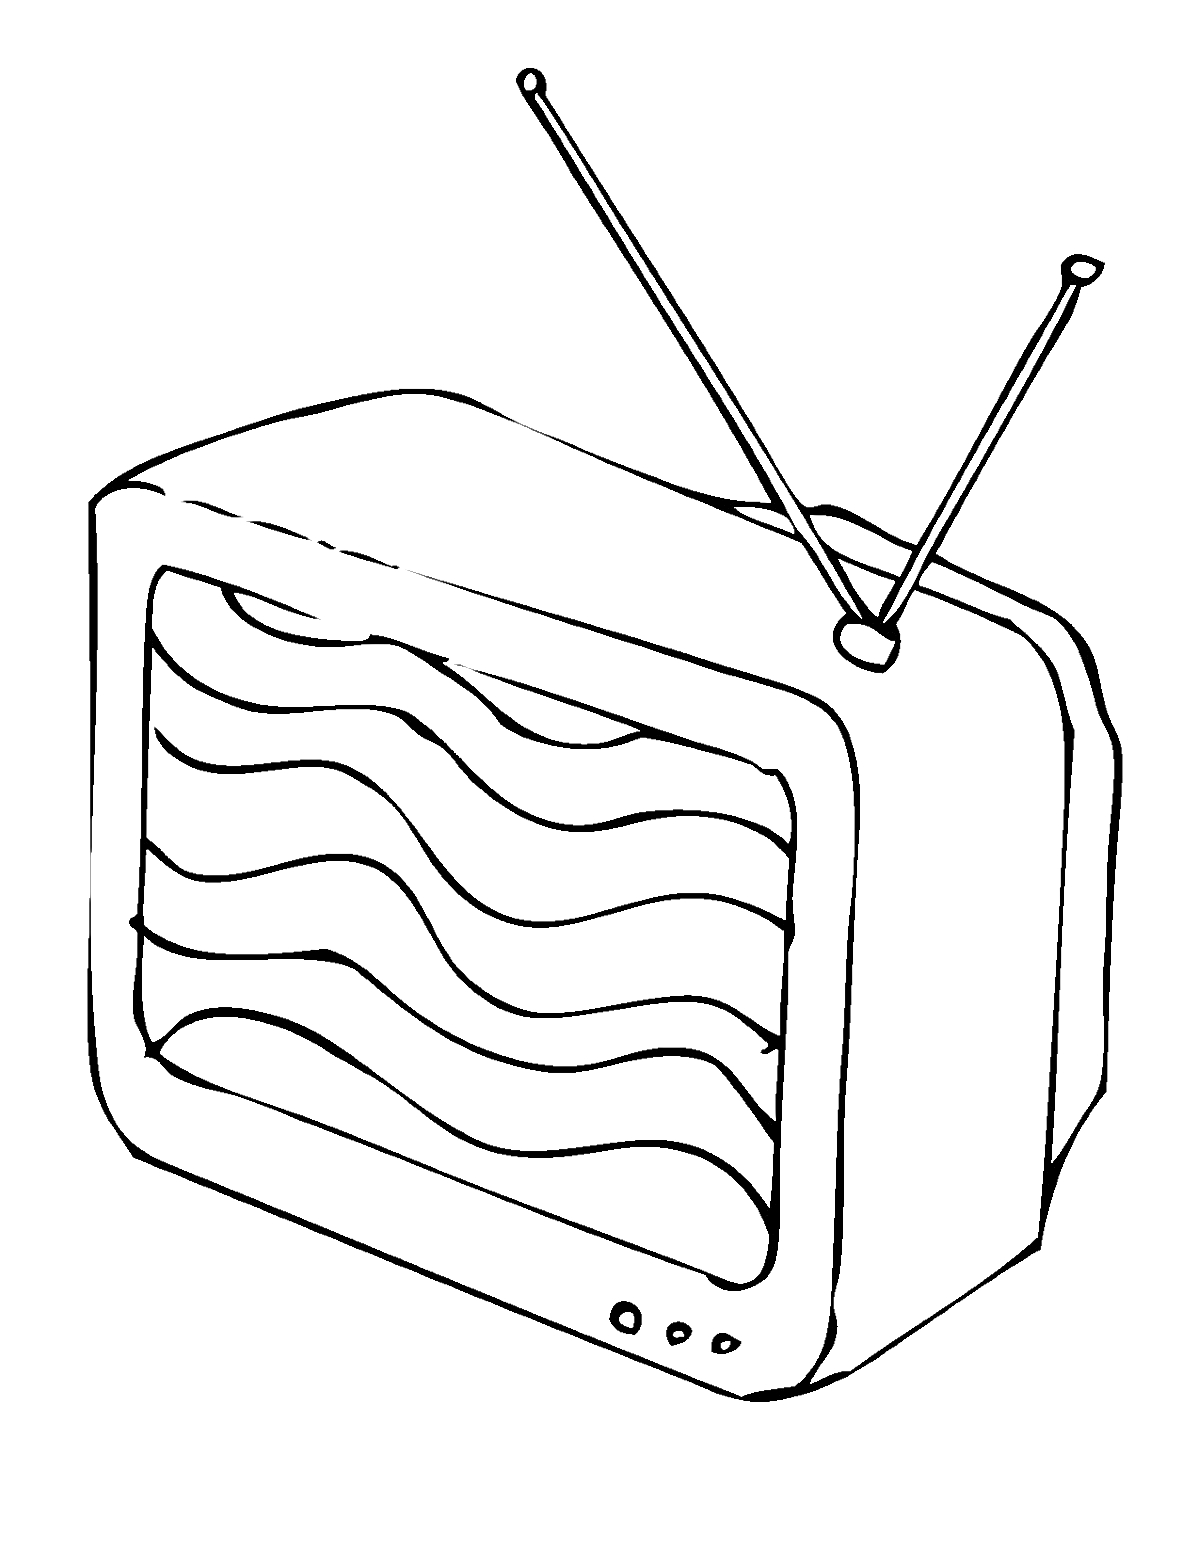 Раскраска Телевизор с антеннами и волнами на экране